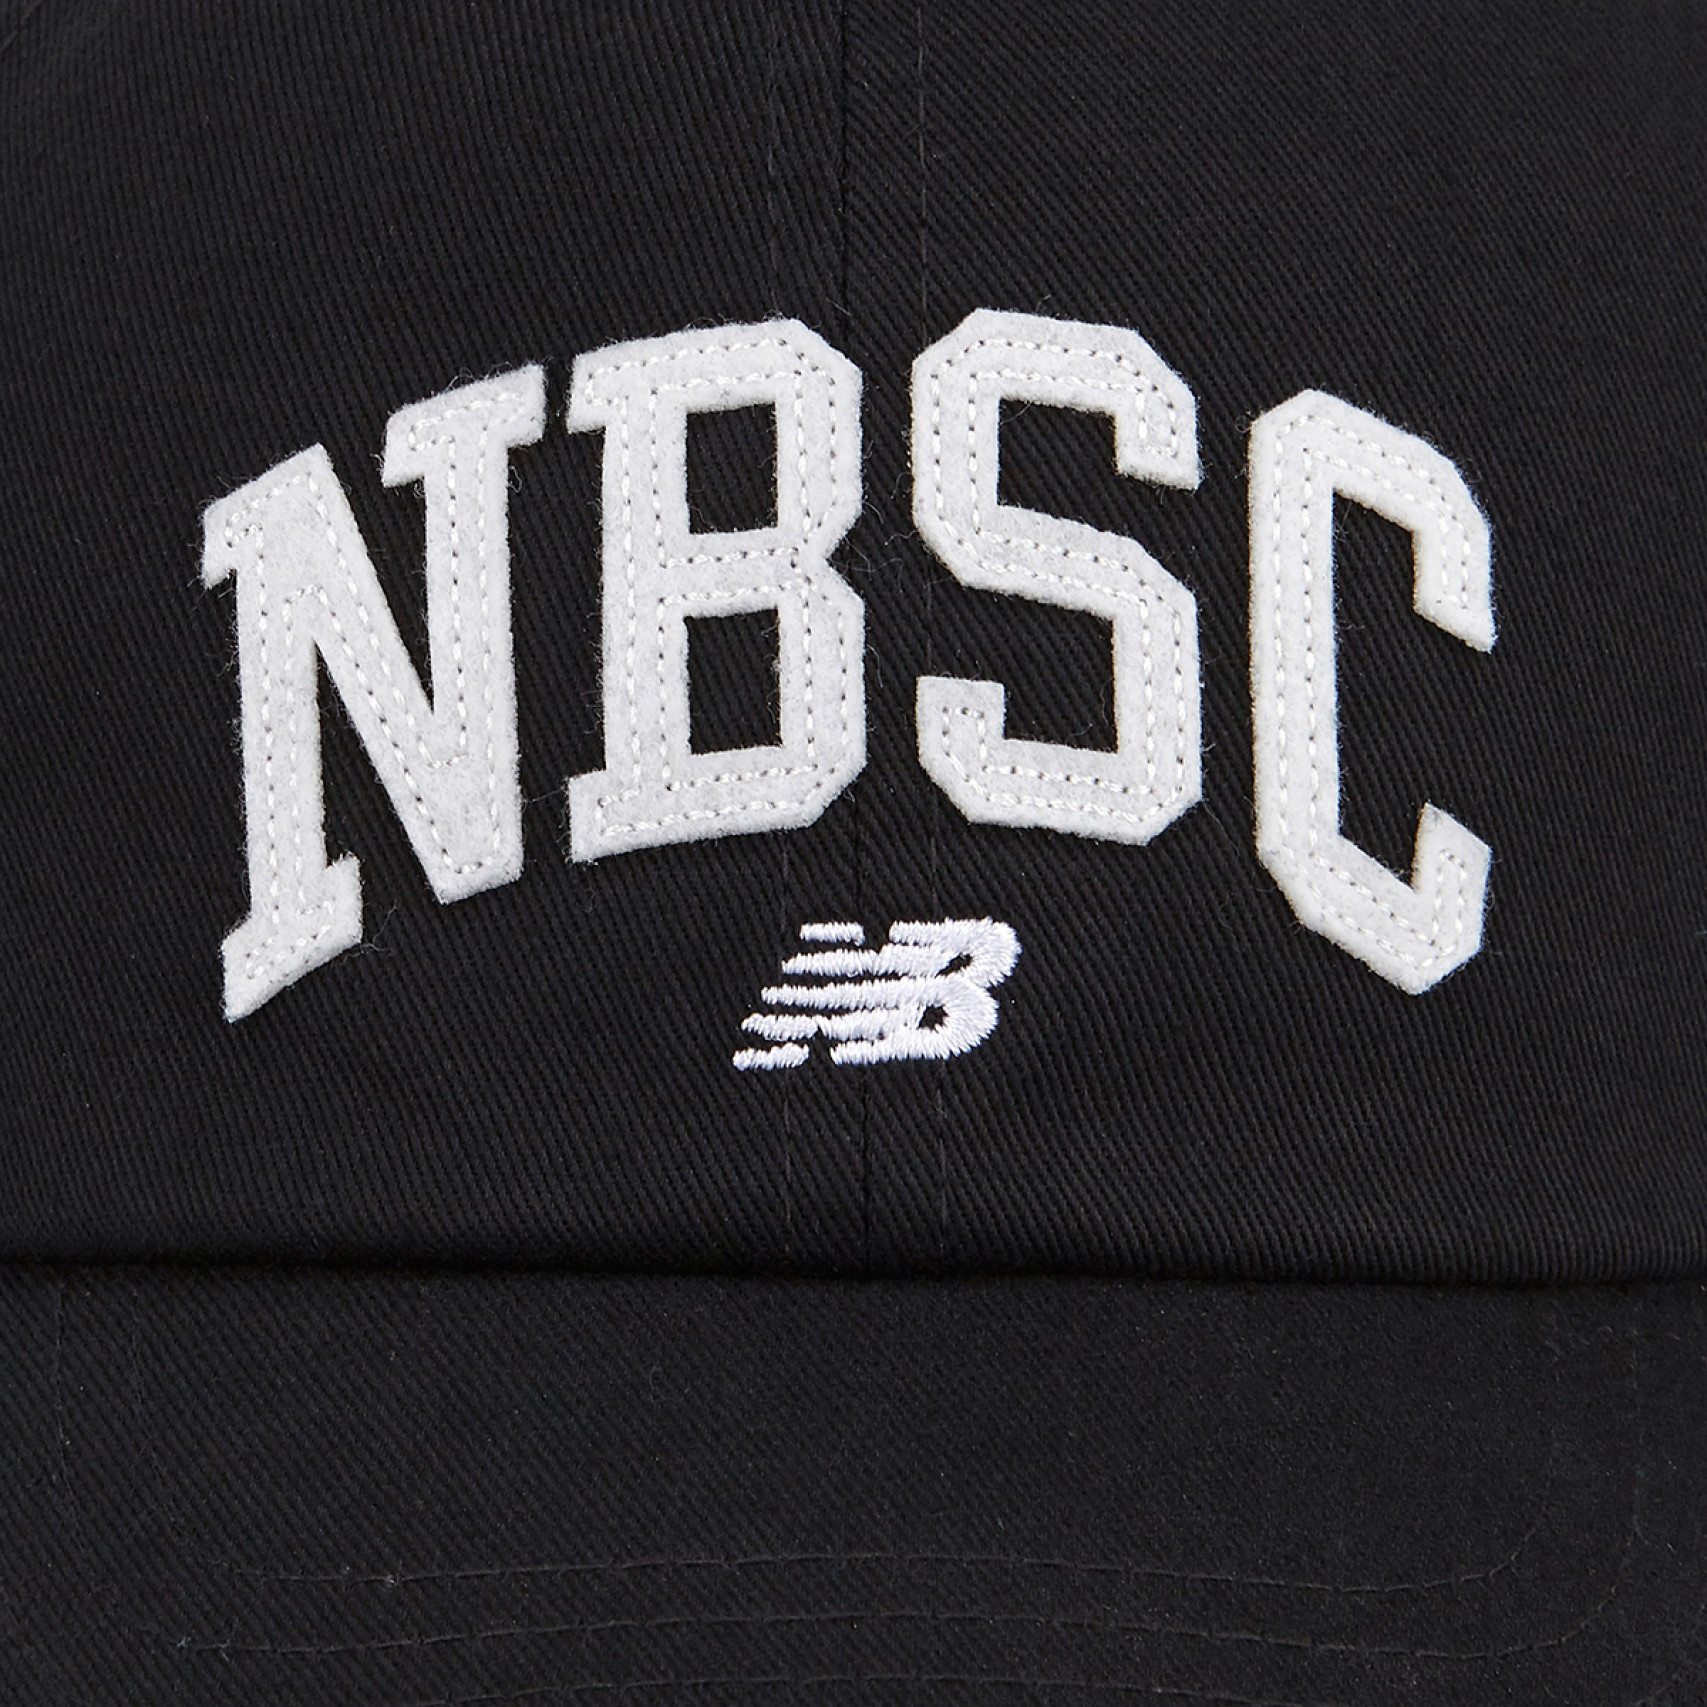 NBSC 볼캡 블랙